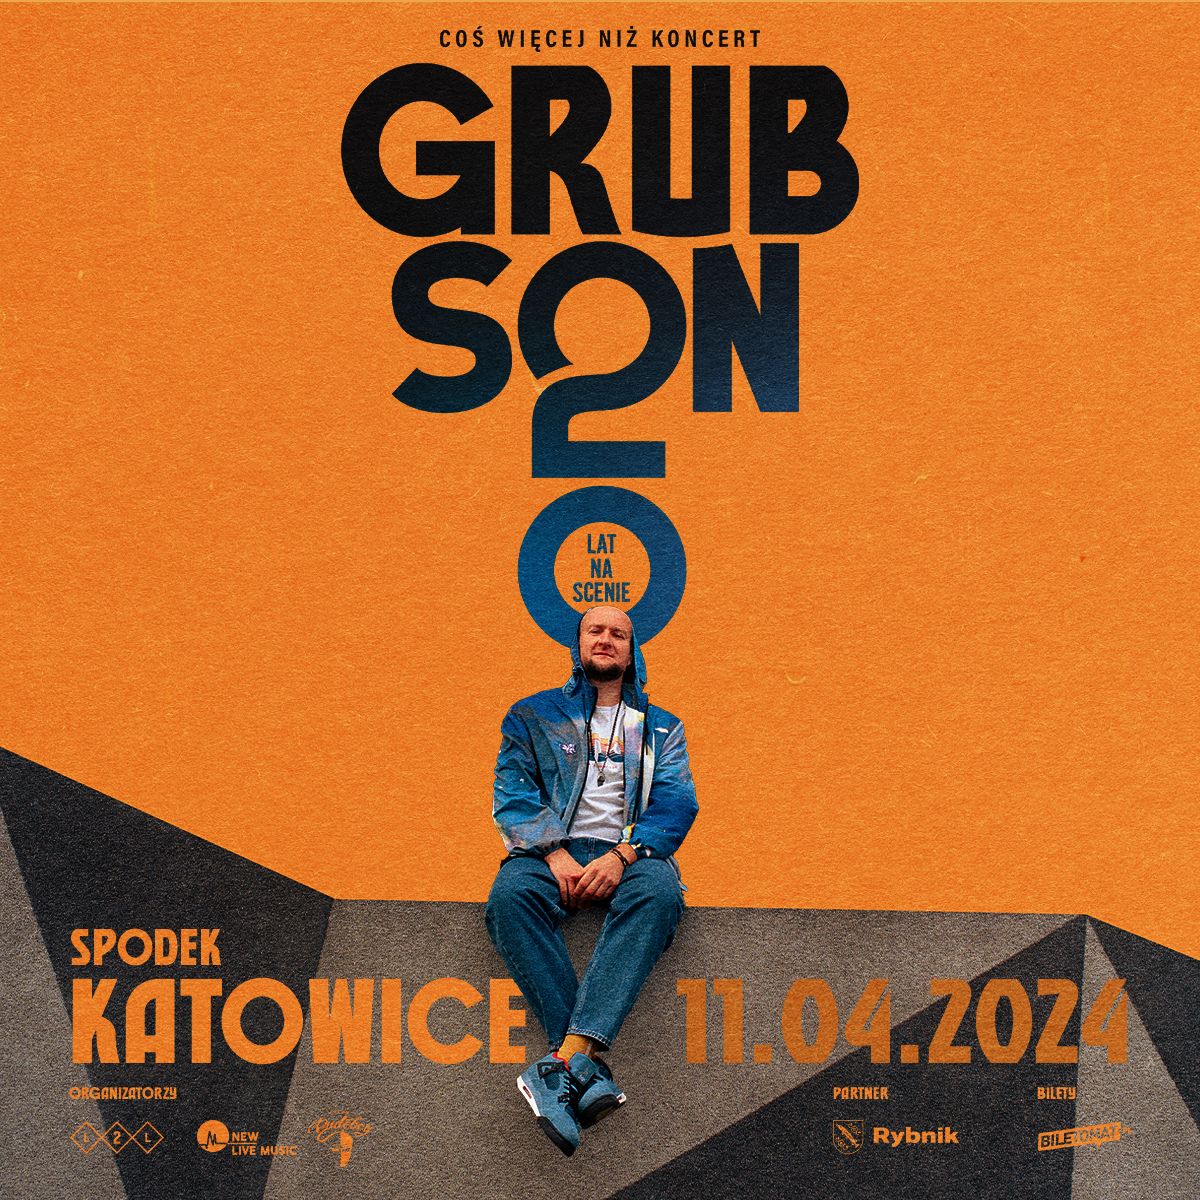 Plakat promujący jubileuszowy koncert Grubsona